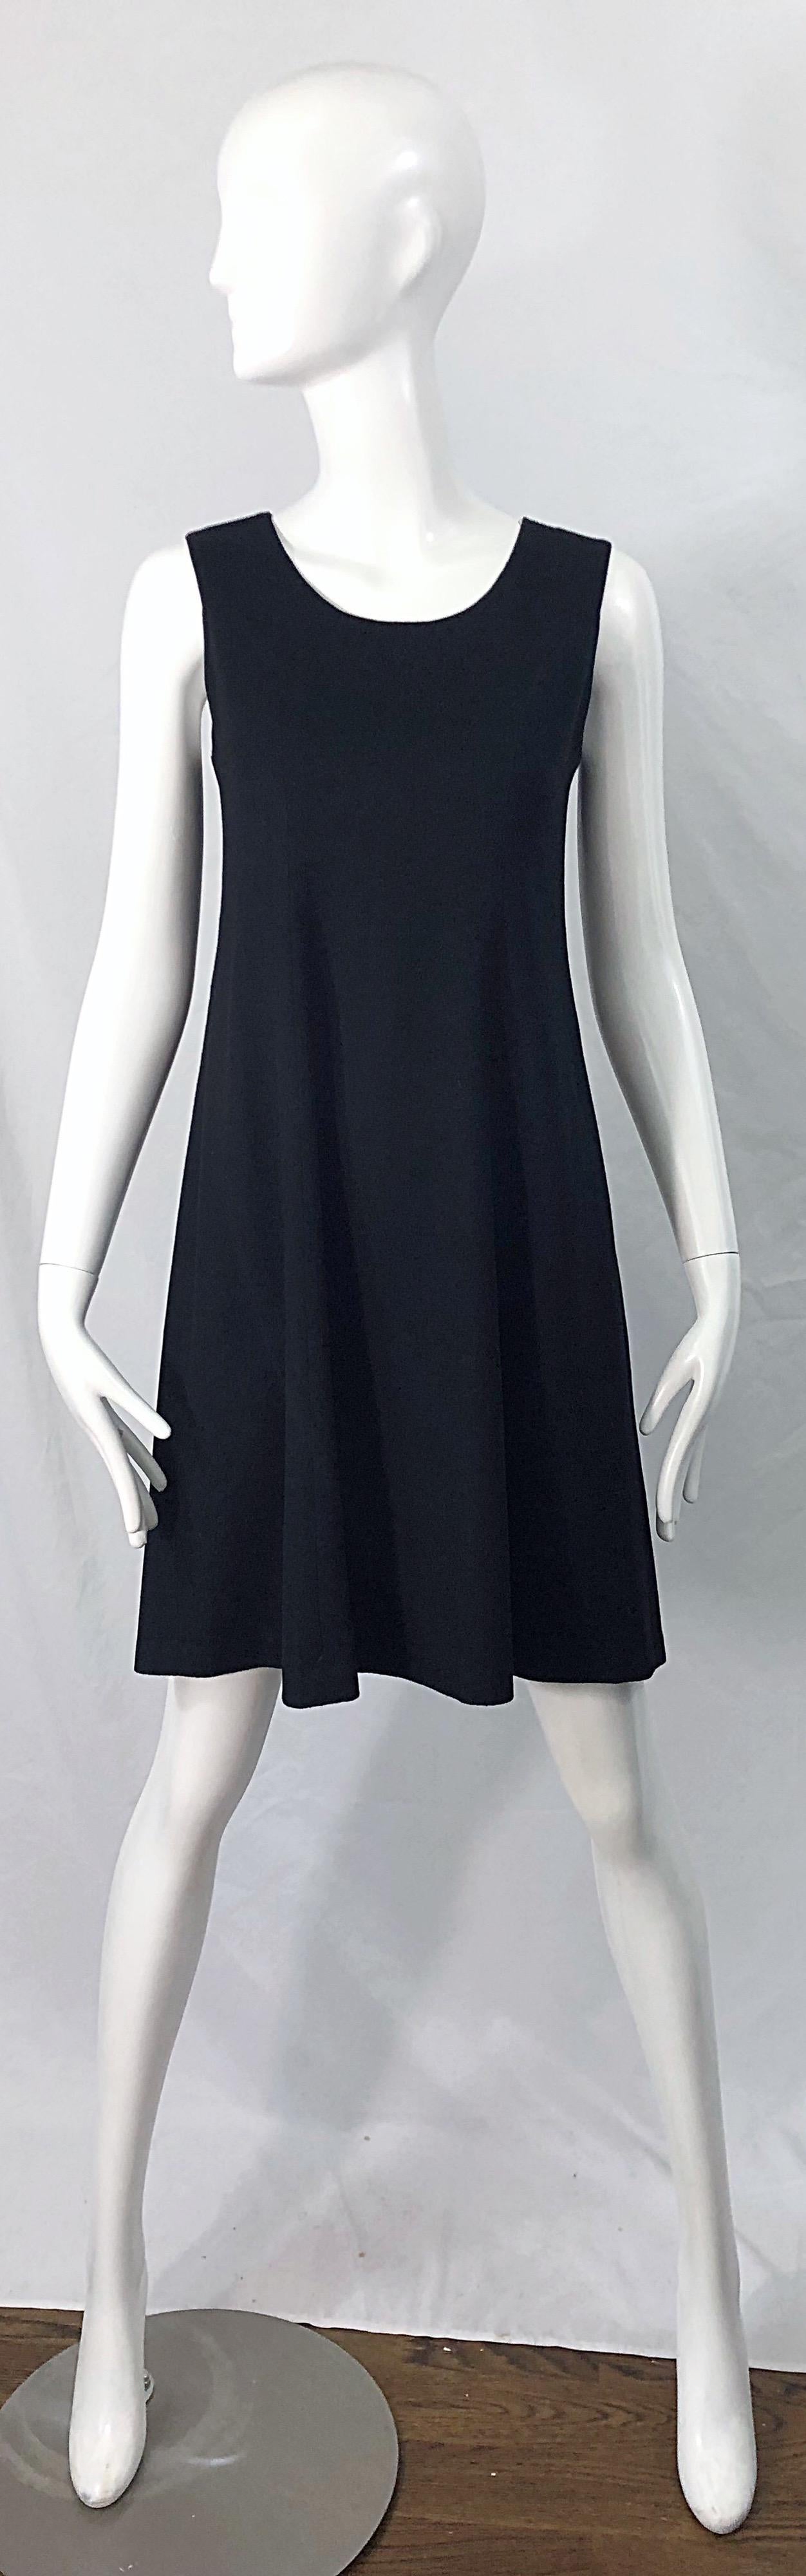 Minimalistischer Chic vom Feinsten in diesem ärmellosen schwarzen Wollkleid von MORGAN LE FAY by LILIANA CASBAL aus den 1990er Jahren! Dieses Kleid ist ein Paradebeispiel für die Minimalismus-Bewegung der 90er Jahre. Schmeichelhafte Form mit